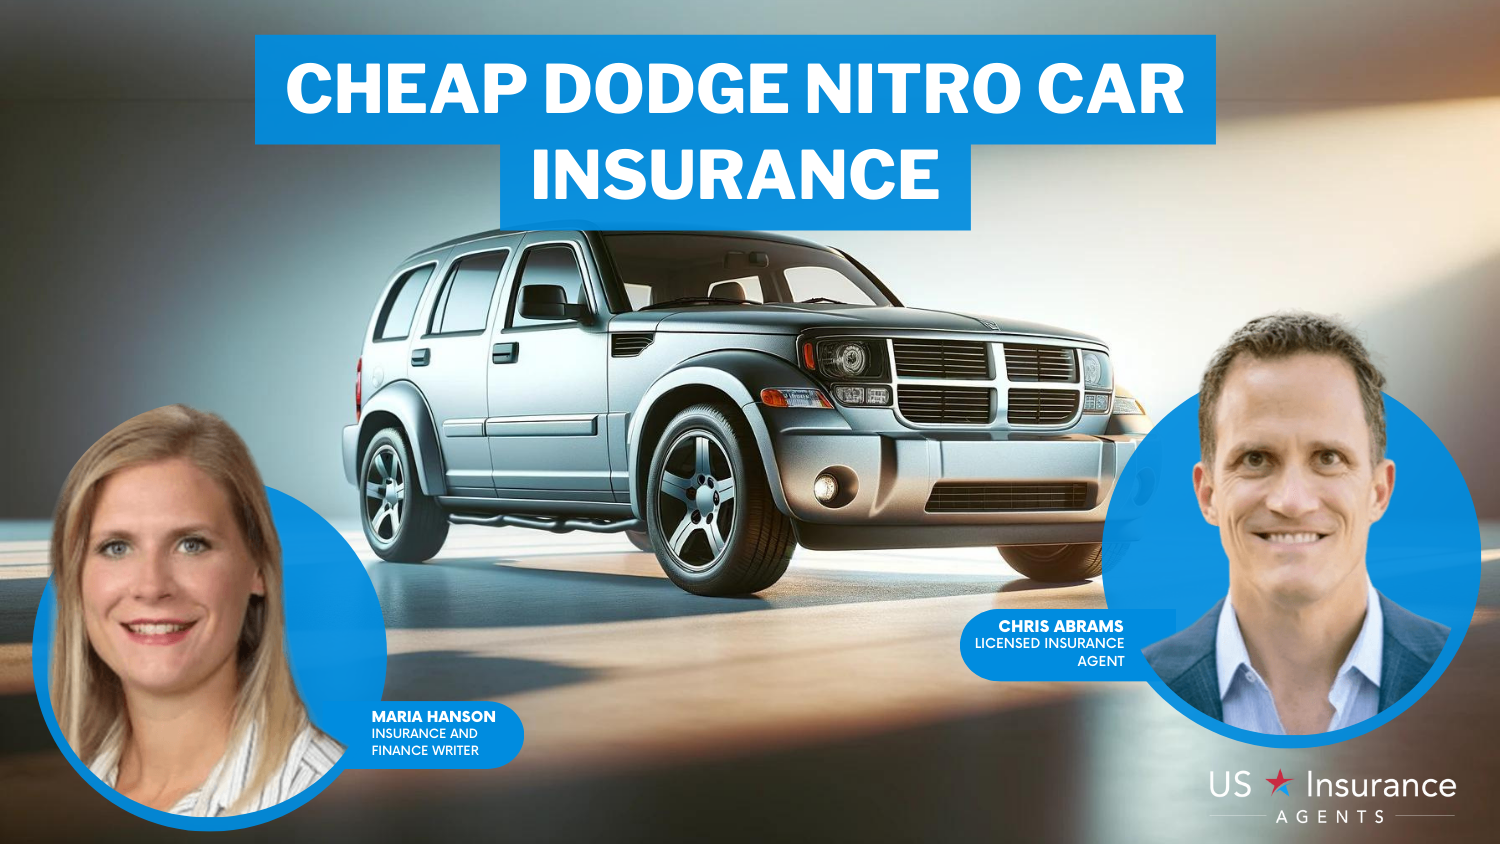 Cheap Dodge Nitro Car Insurance: State Farm, American Family, Progressive